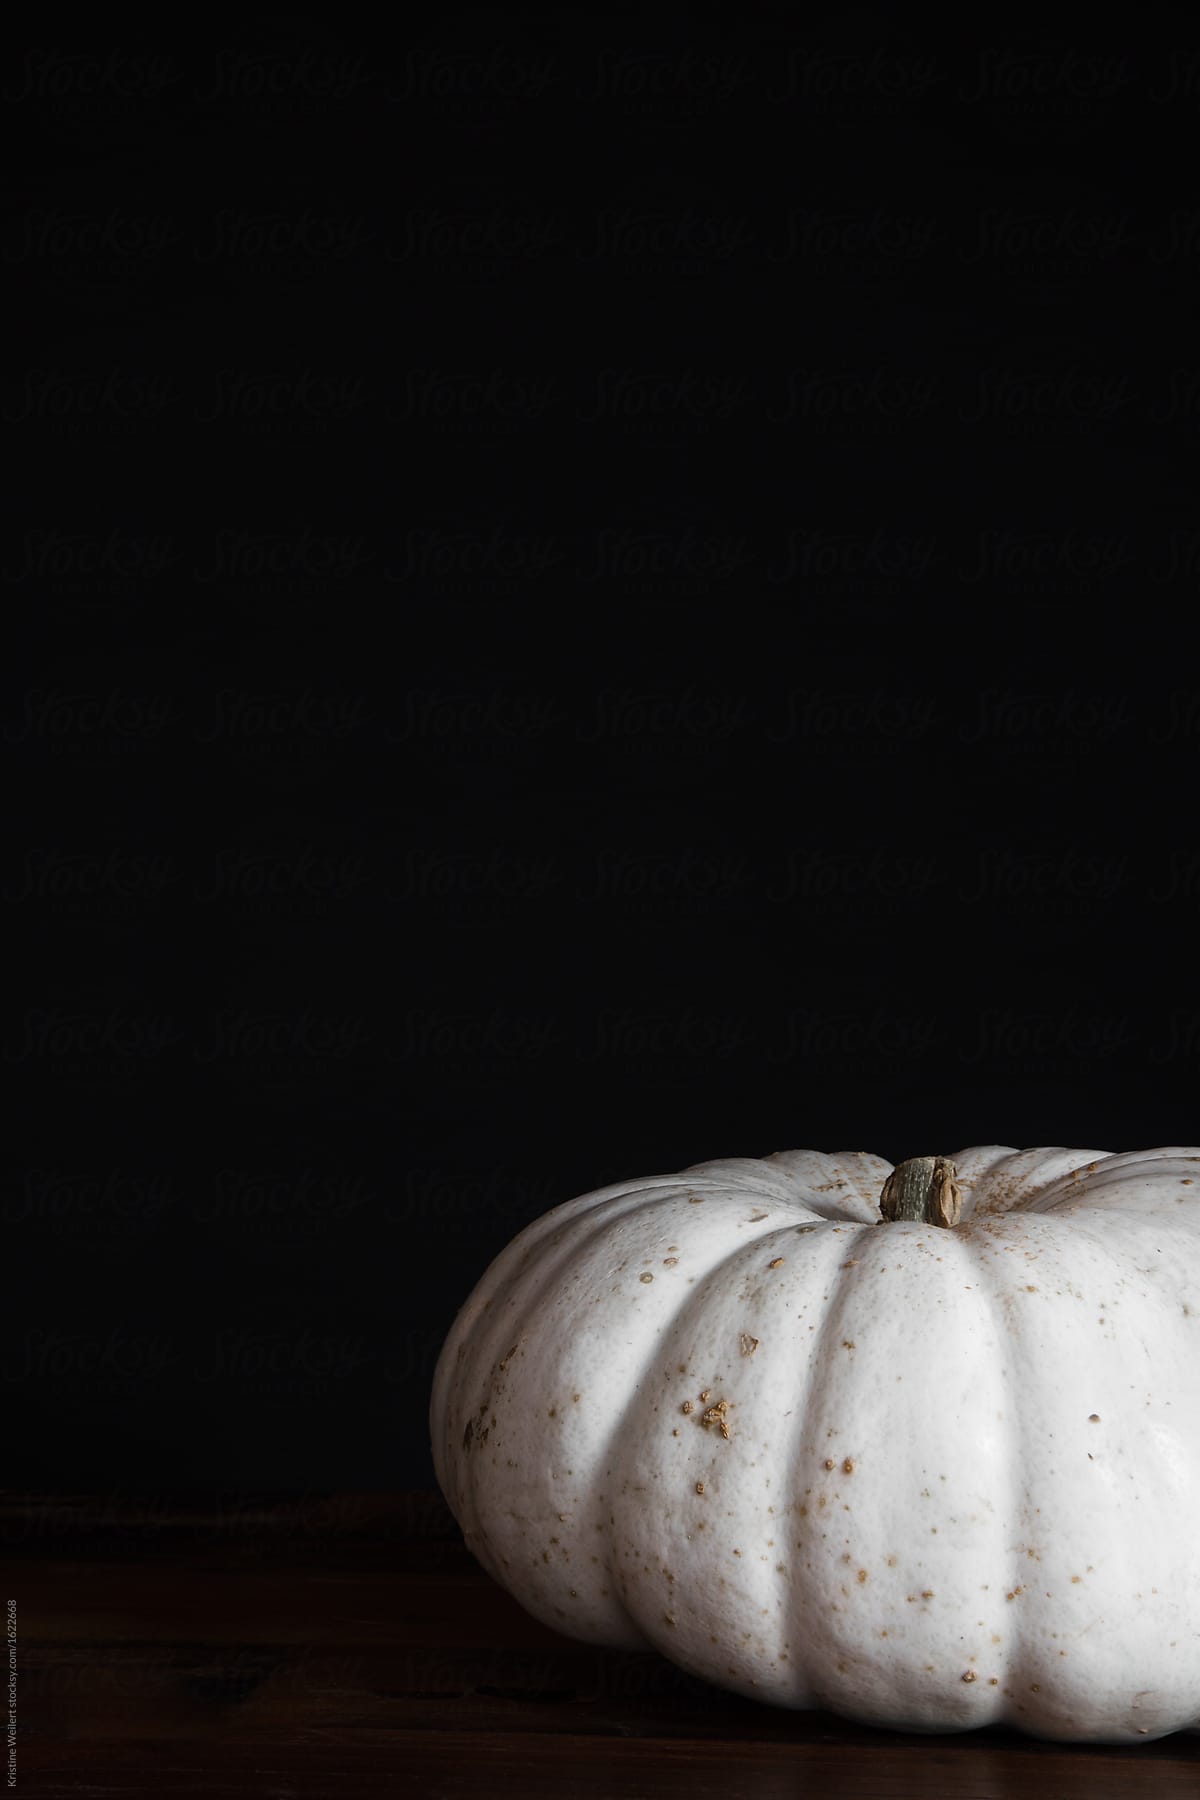 White pumpkin on dark background